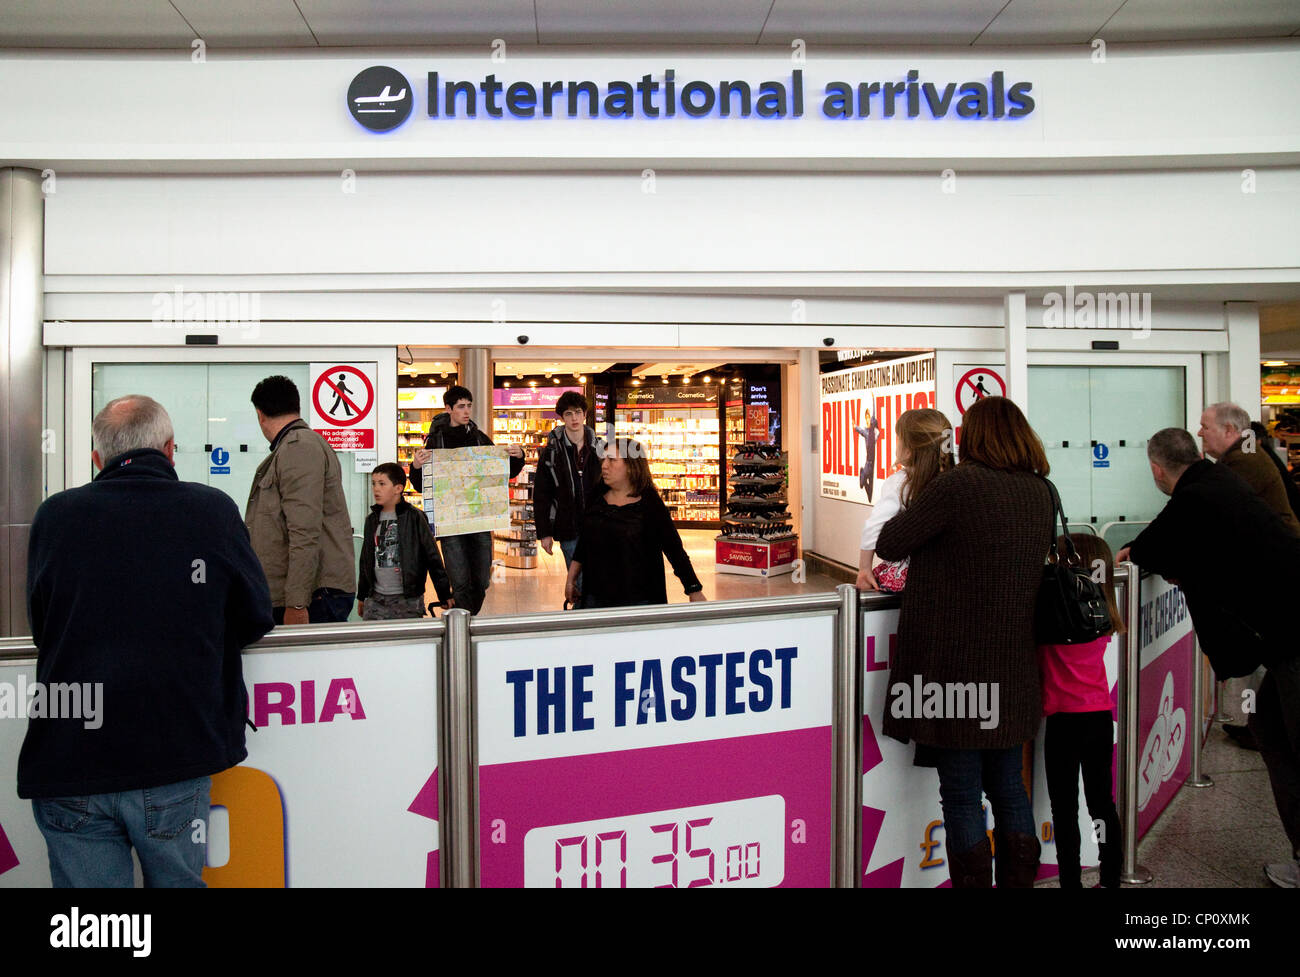 La gente en el departamento de llegadas internacionales del aeropuerto de Stansted, Essex UK Foto de stock